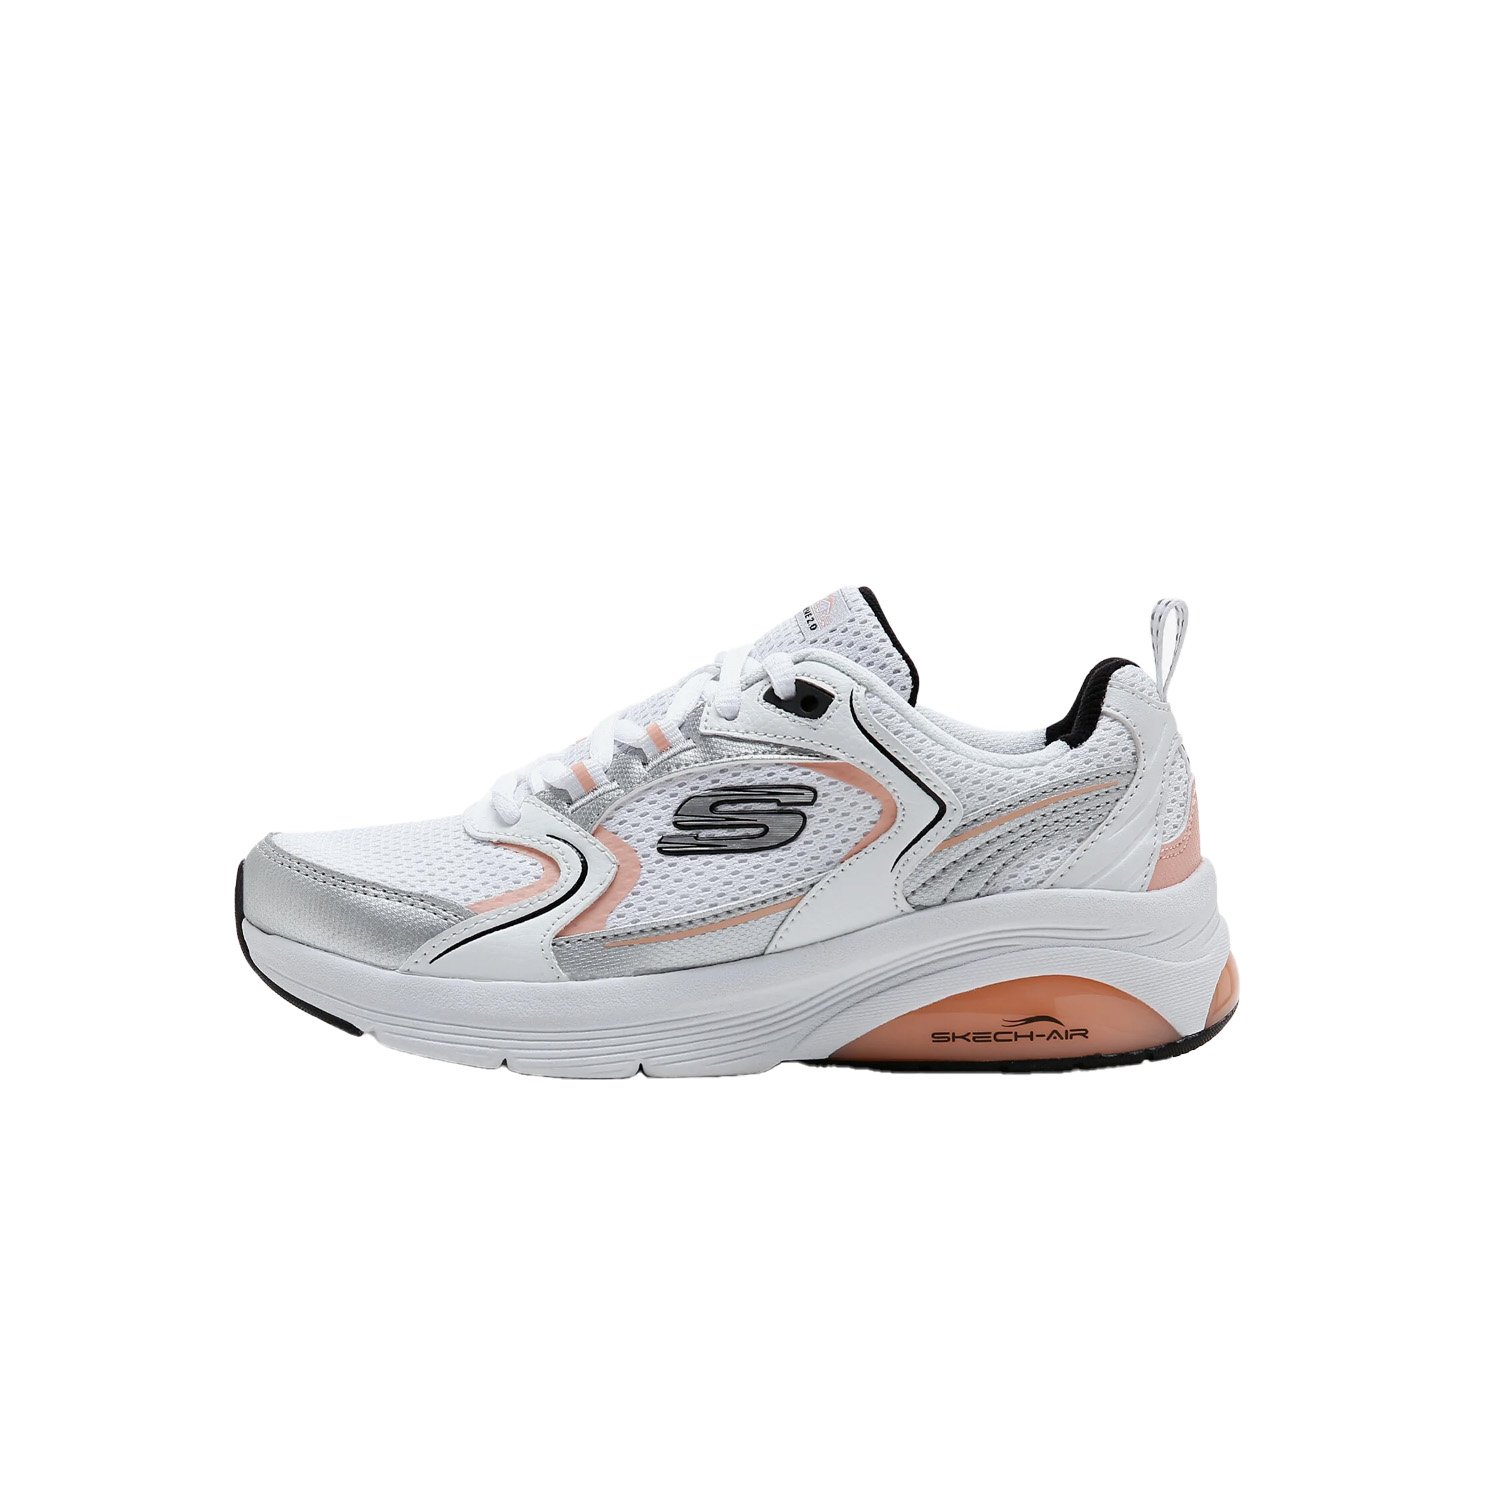 Skechers Skech-Air Extreme 2.0 Kadın Ayakkabısı - Beyaz - 1